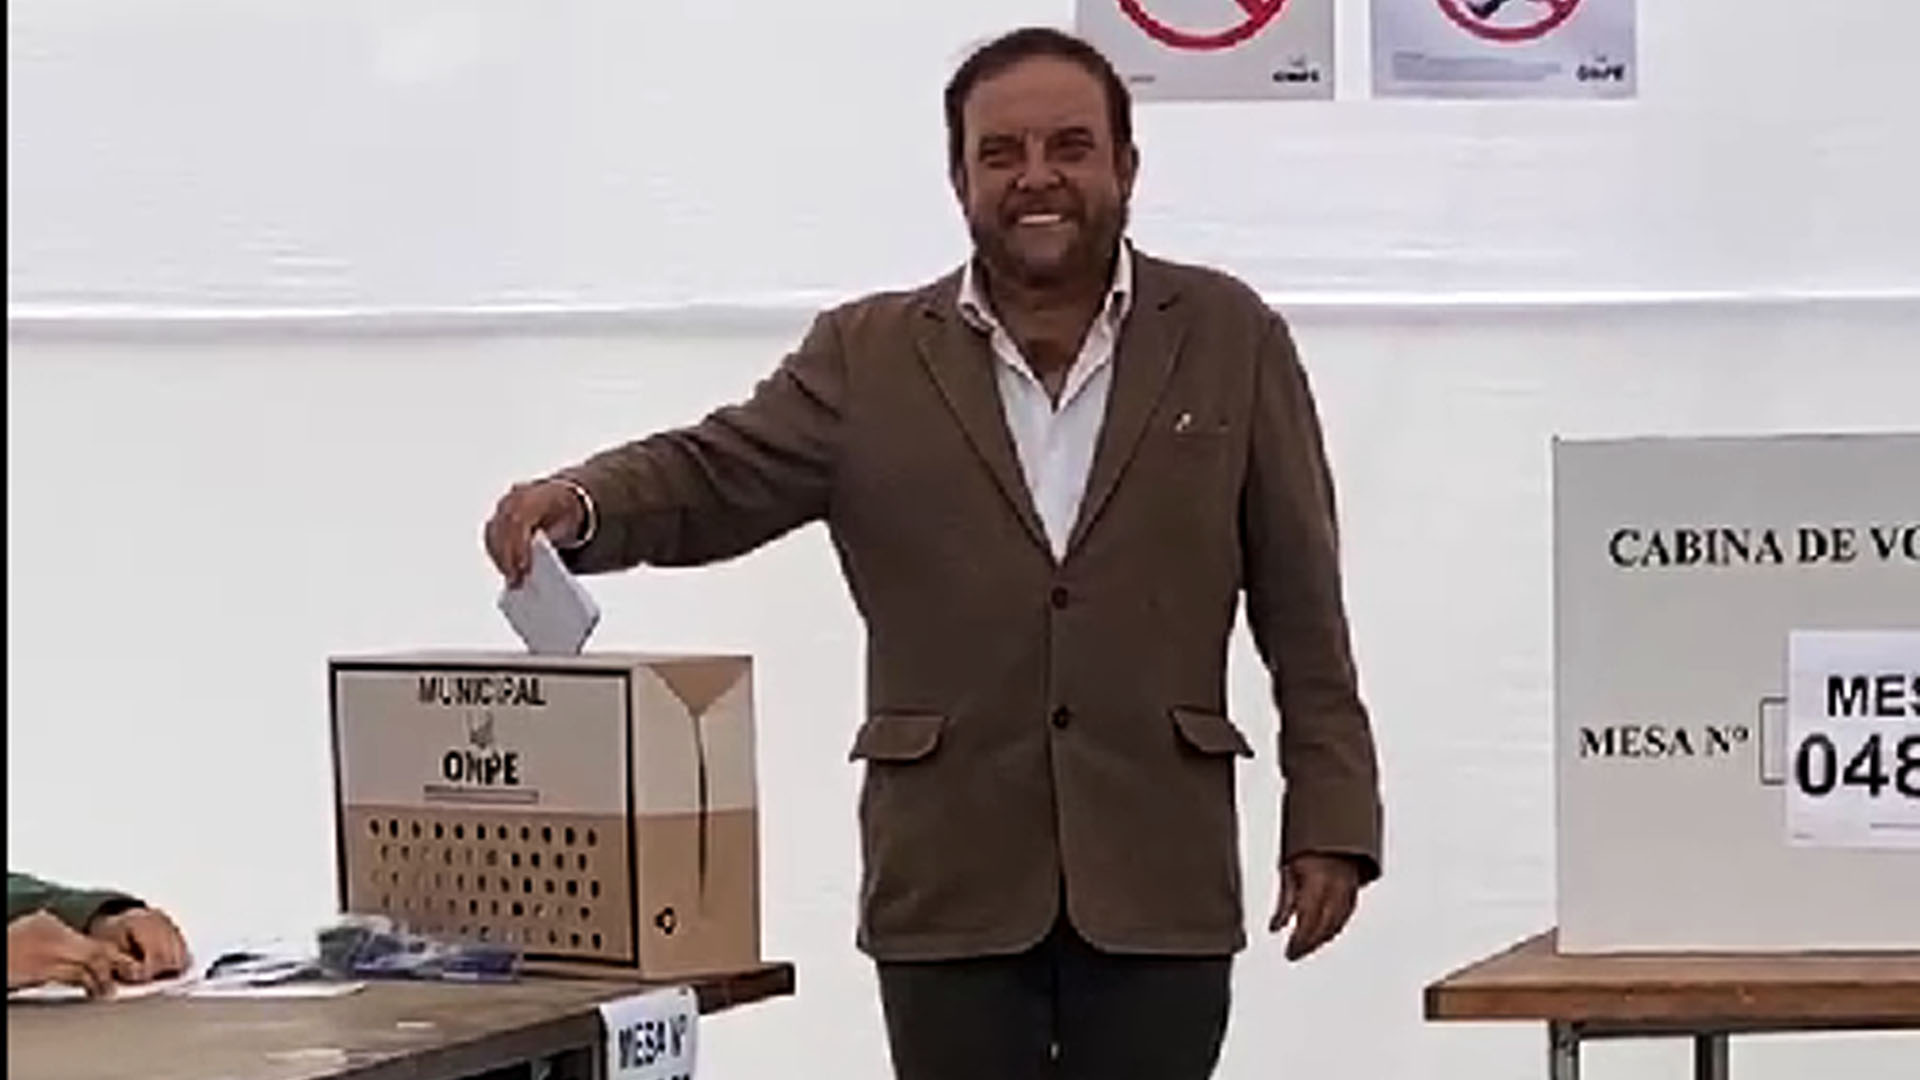 Gonzalo Alegría voted in Surco.